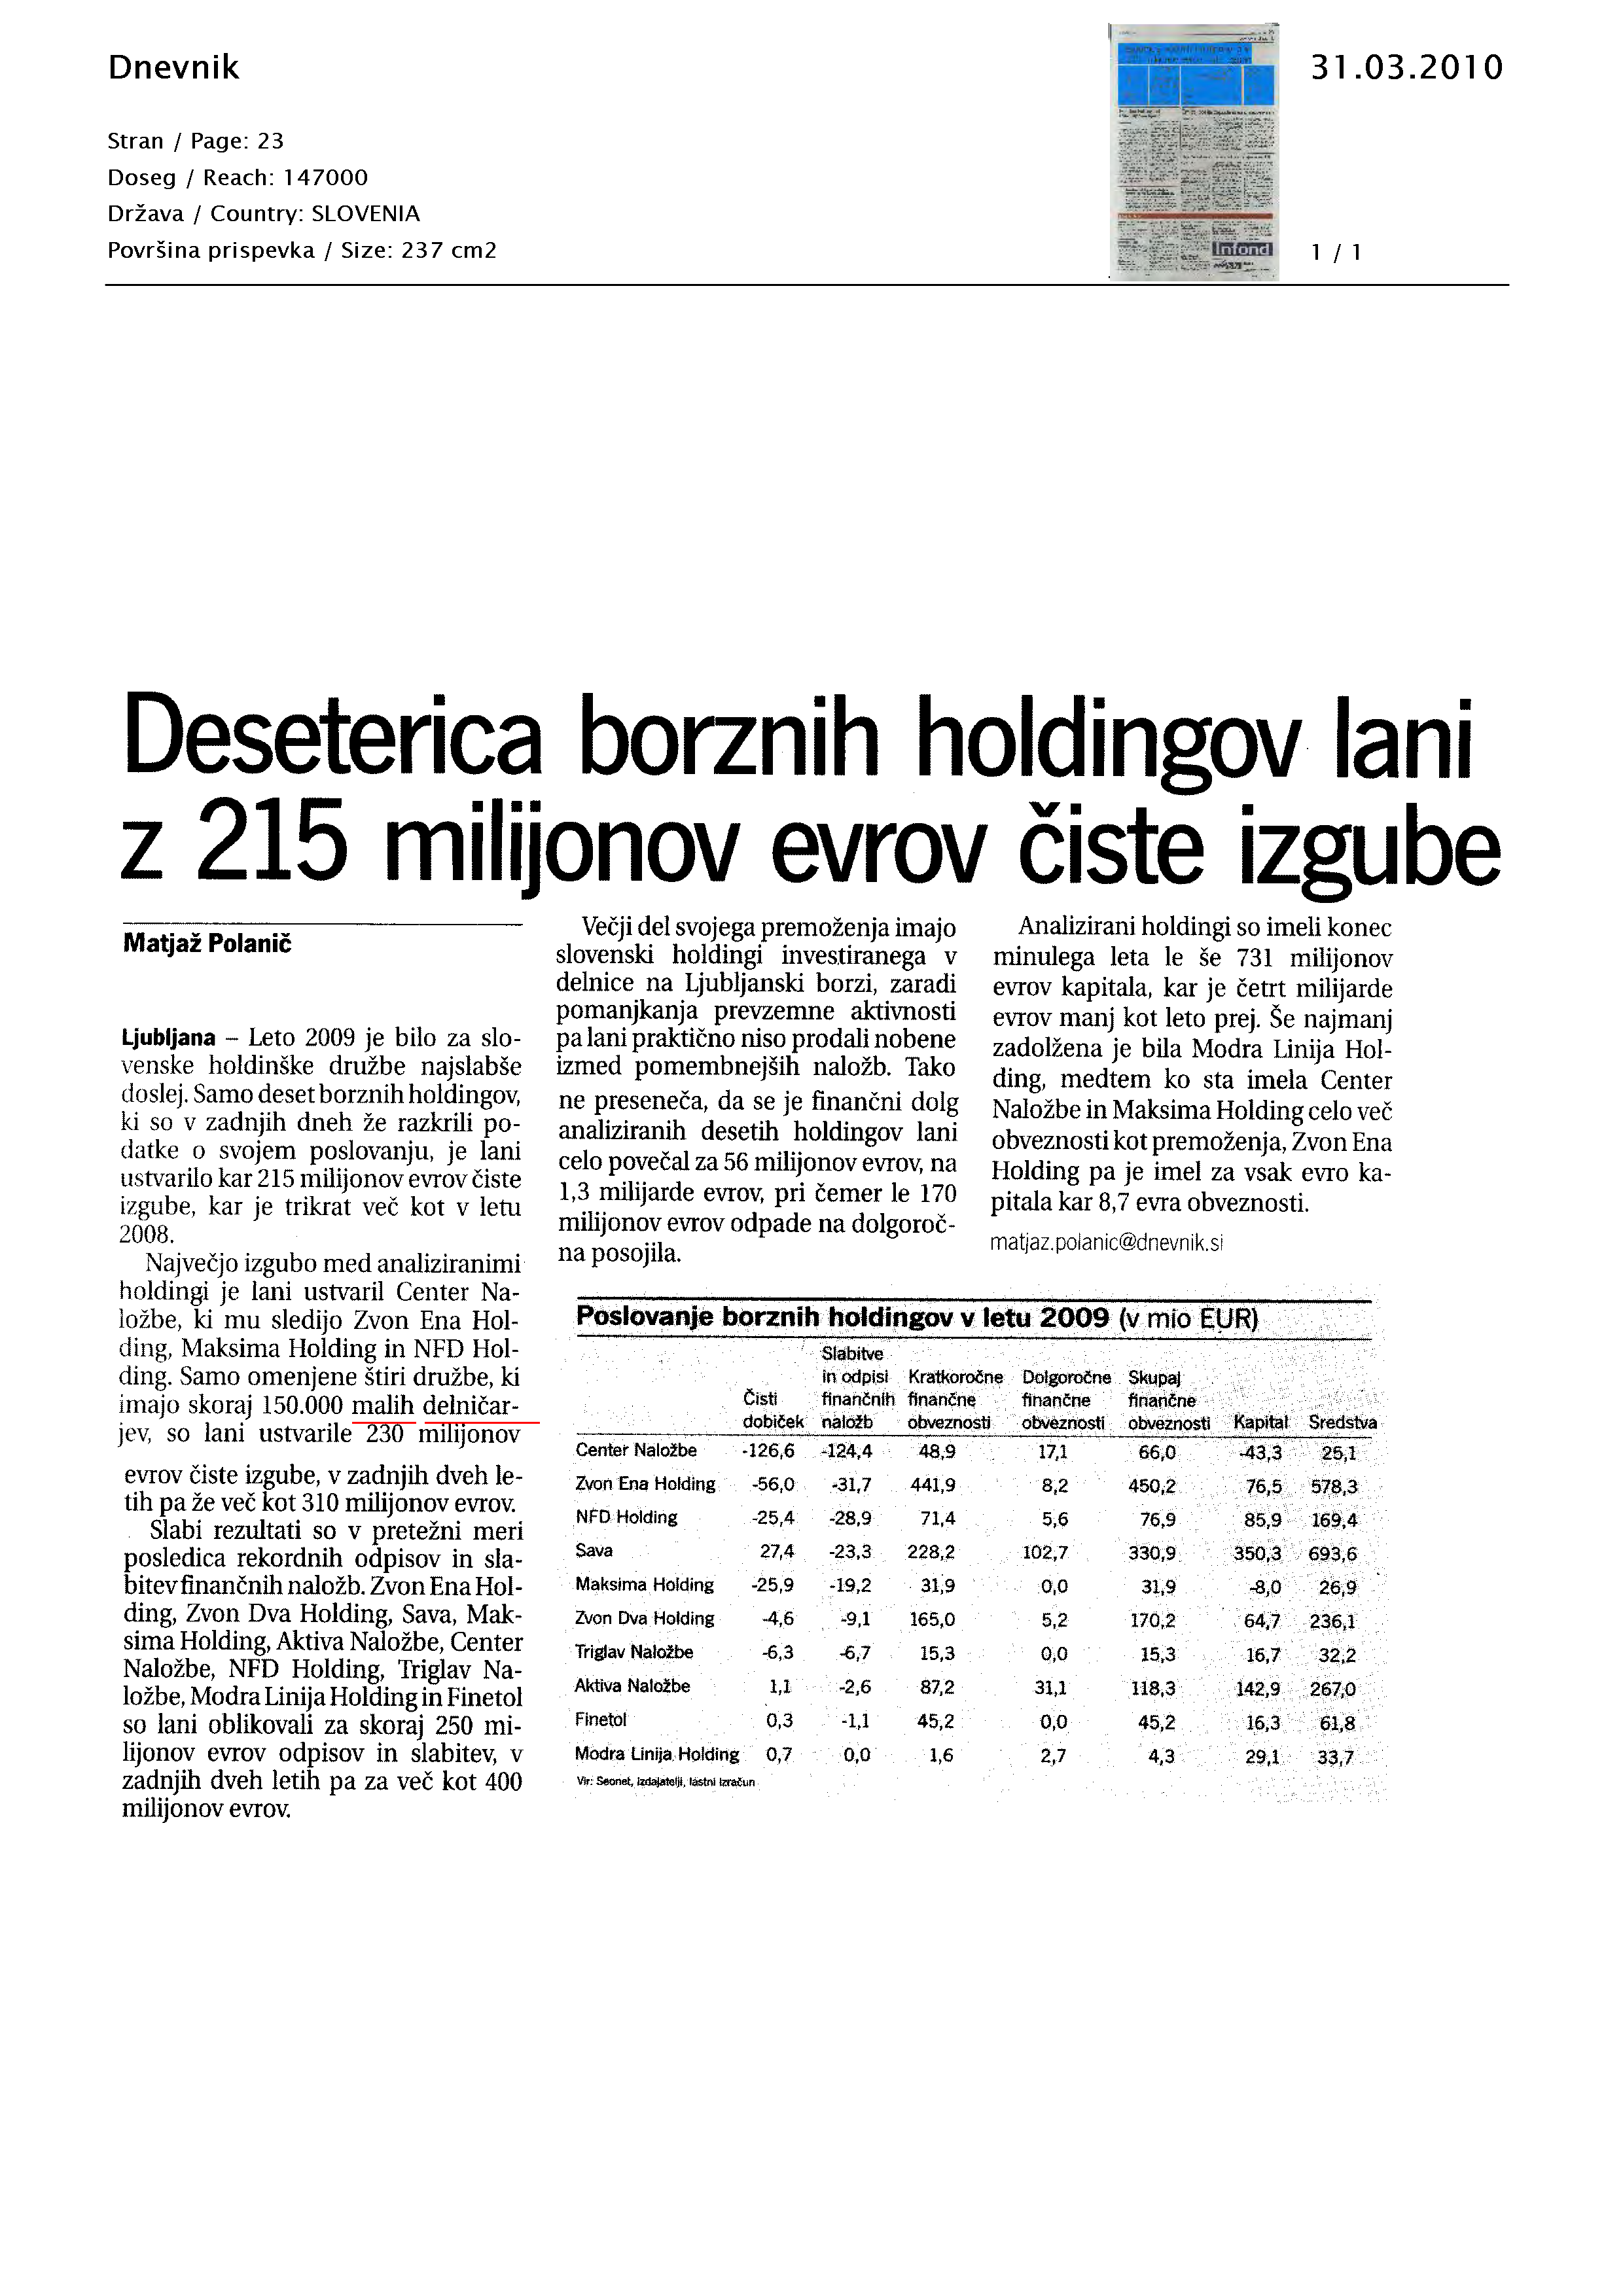 Deseterica_borznih_holdingov_lani_z_215_milijonov_evrov_iste_izgube